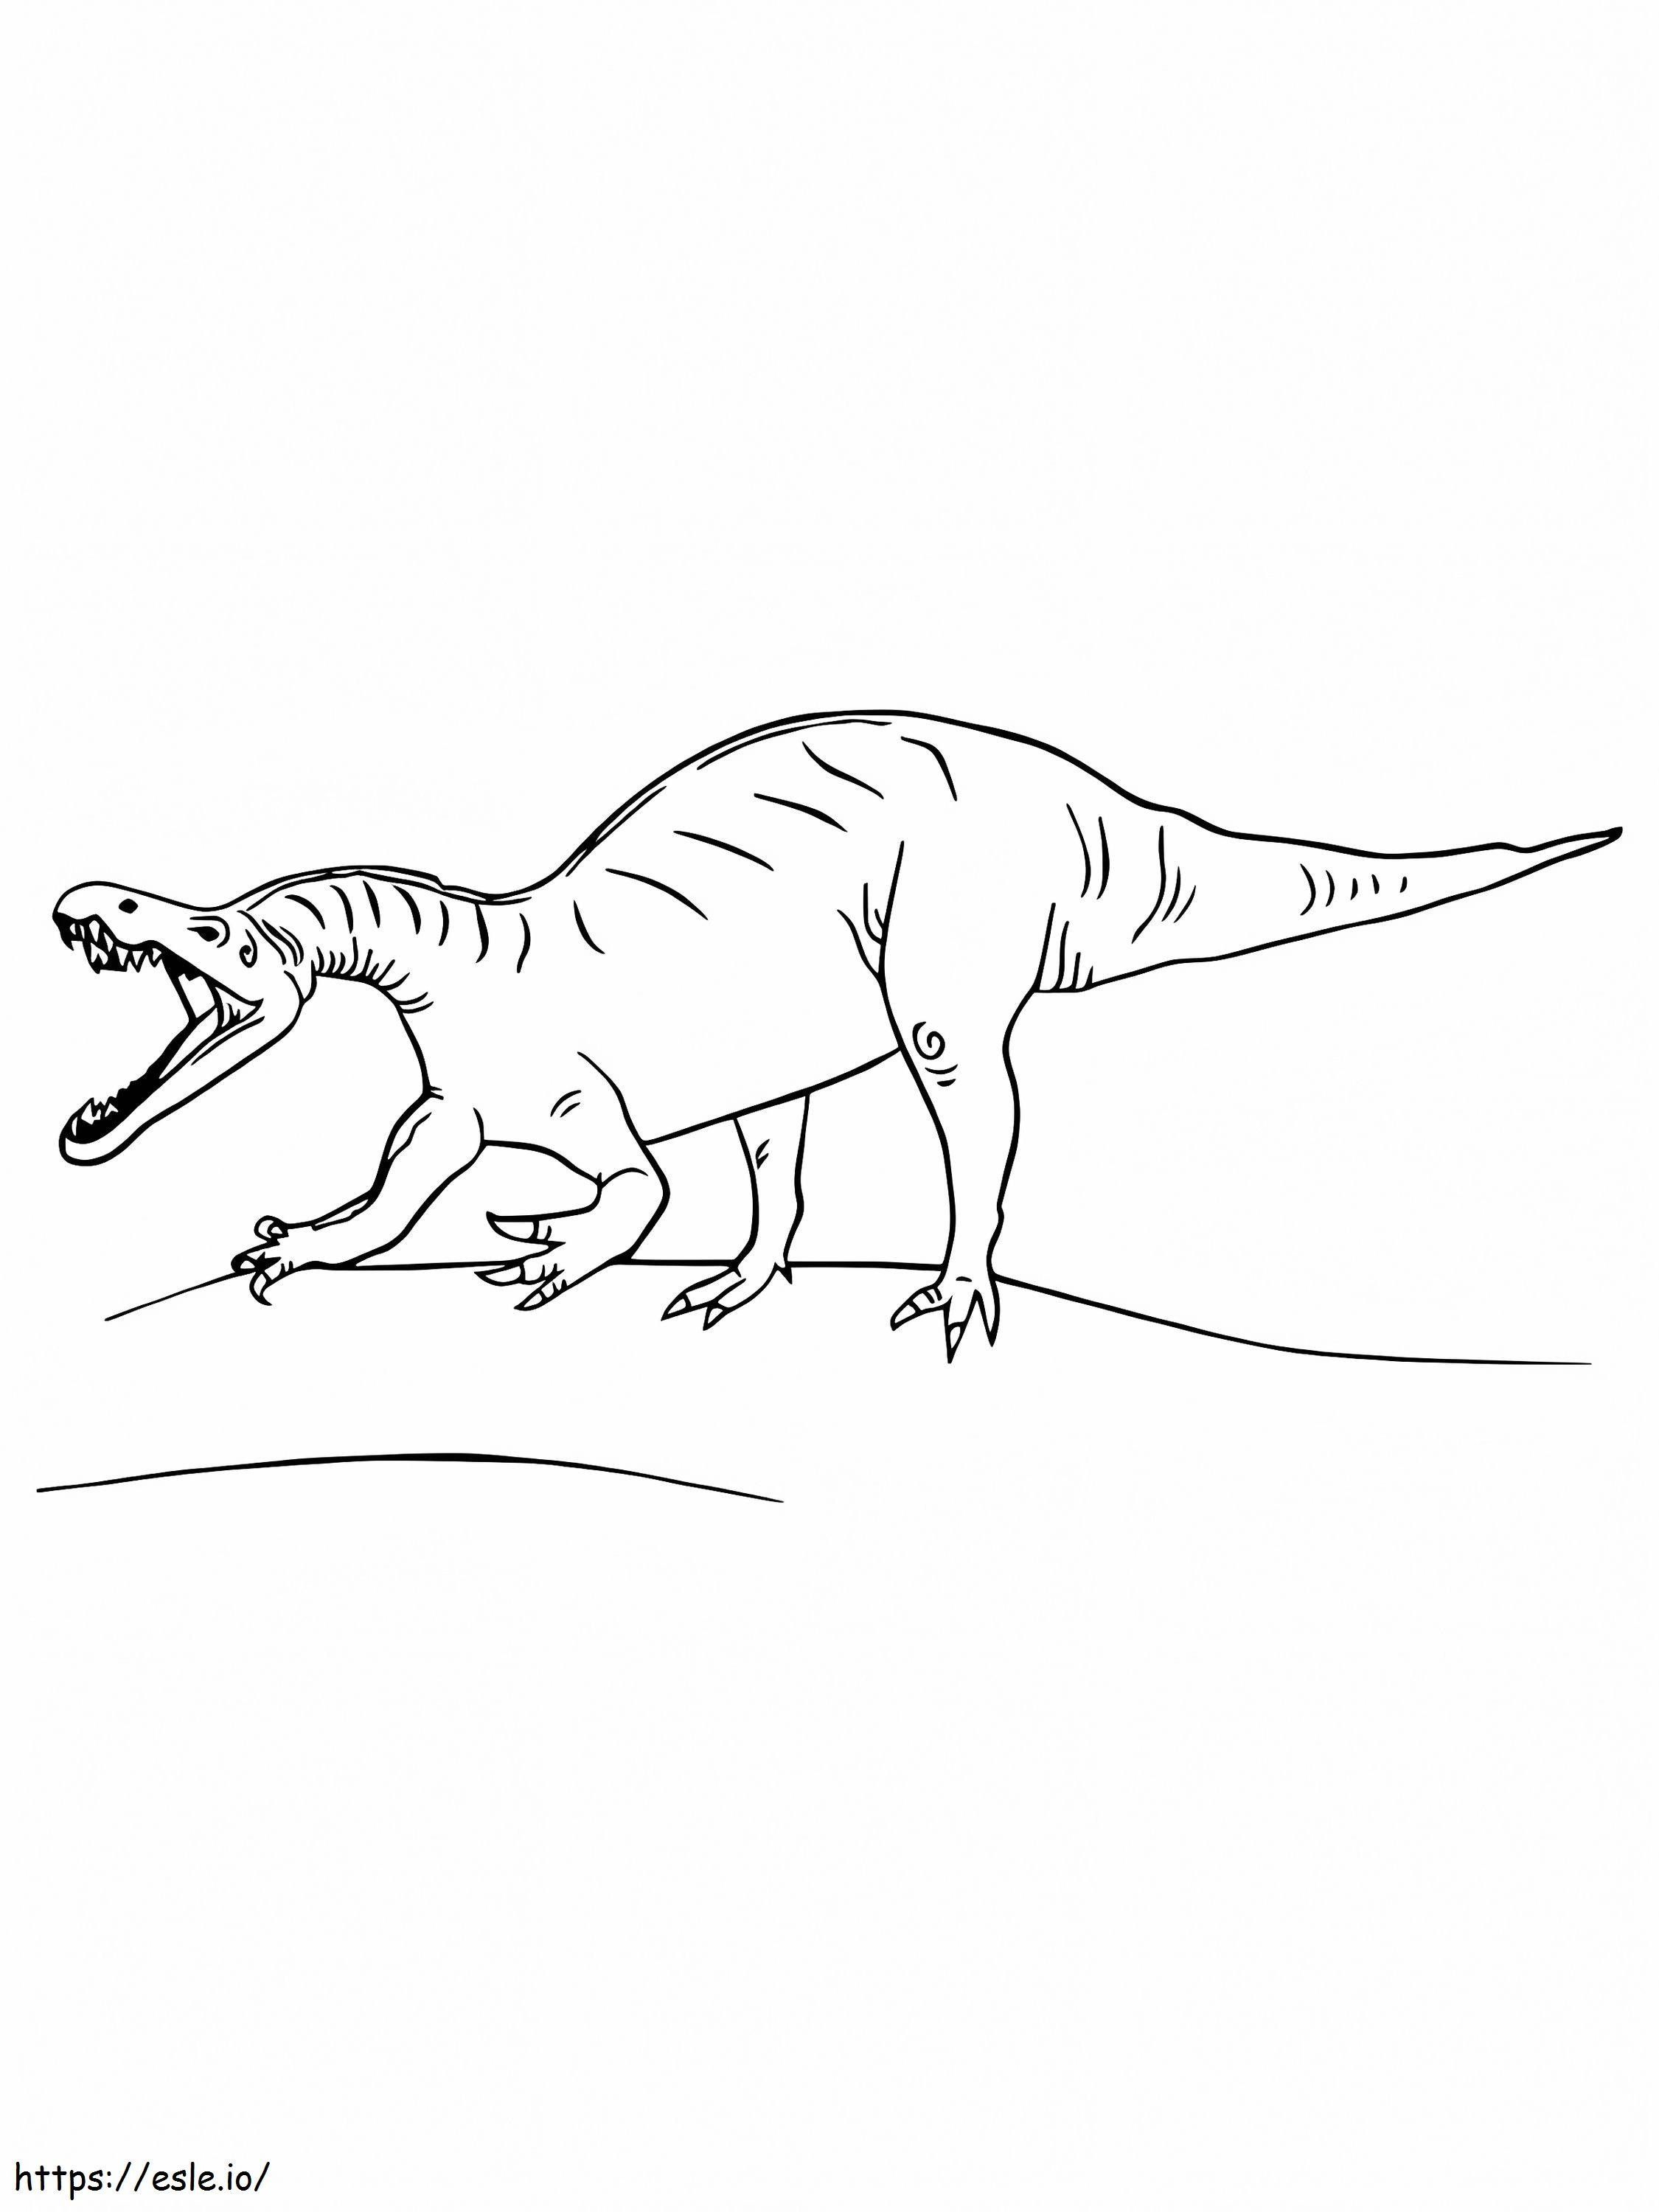 Jurawelt Suchomimus ausmalbilder